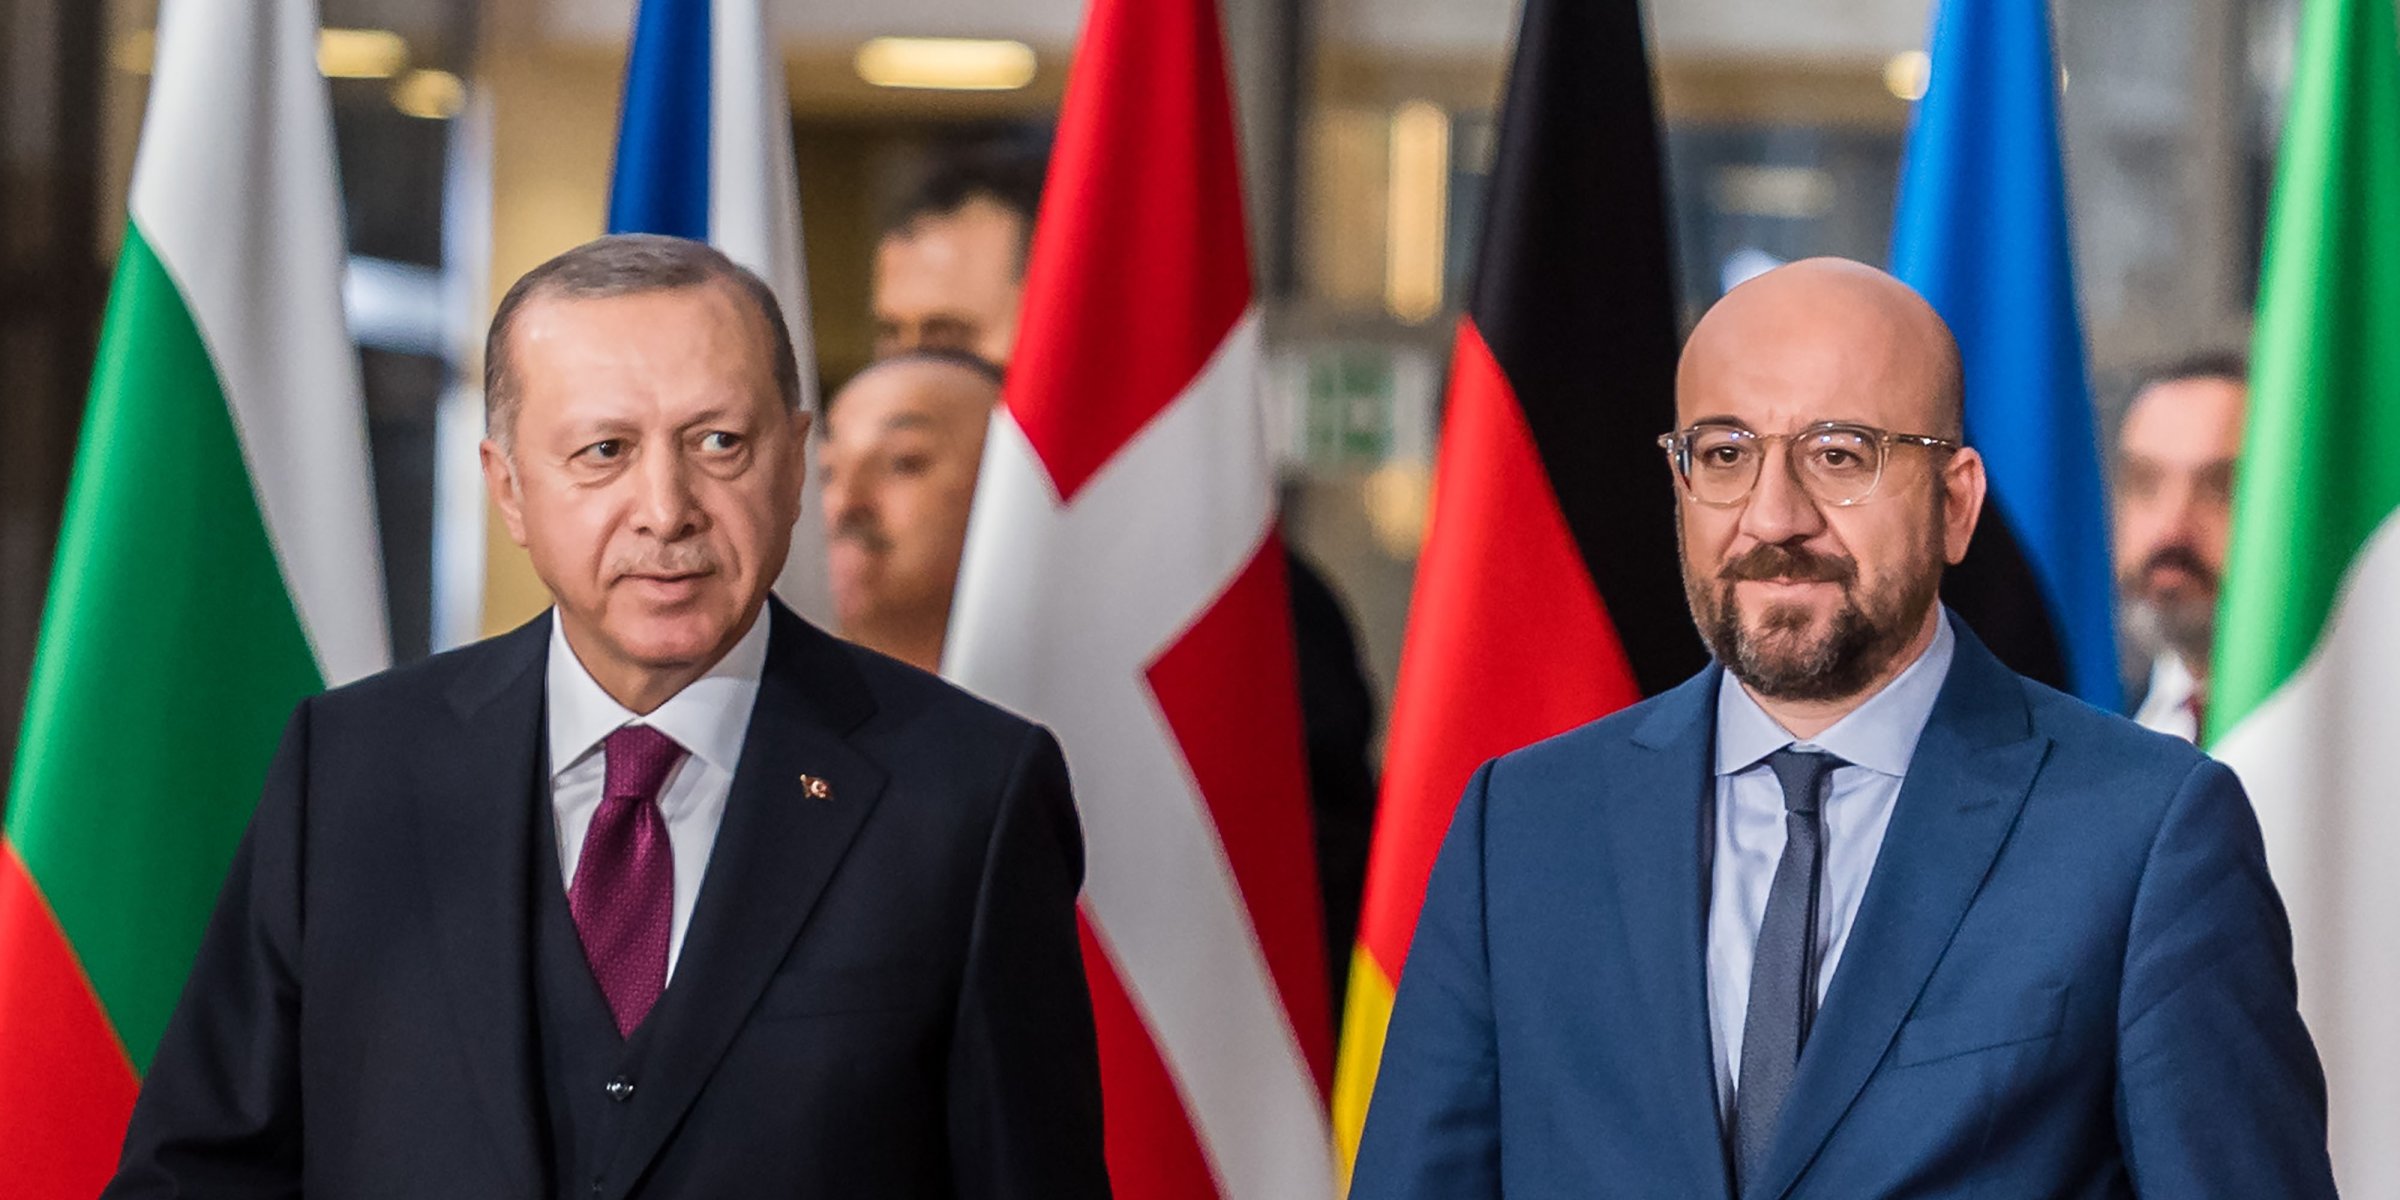 Η ΕΕ έχει προτεραιότητα στην ατζέντα της Τουρκίας, λέει ο Ερντογάν, επαναλαμβάνοντας τη νέα εποχή με το μπλοκ